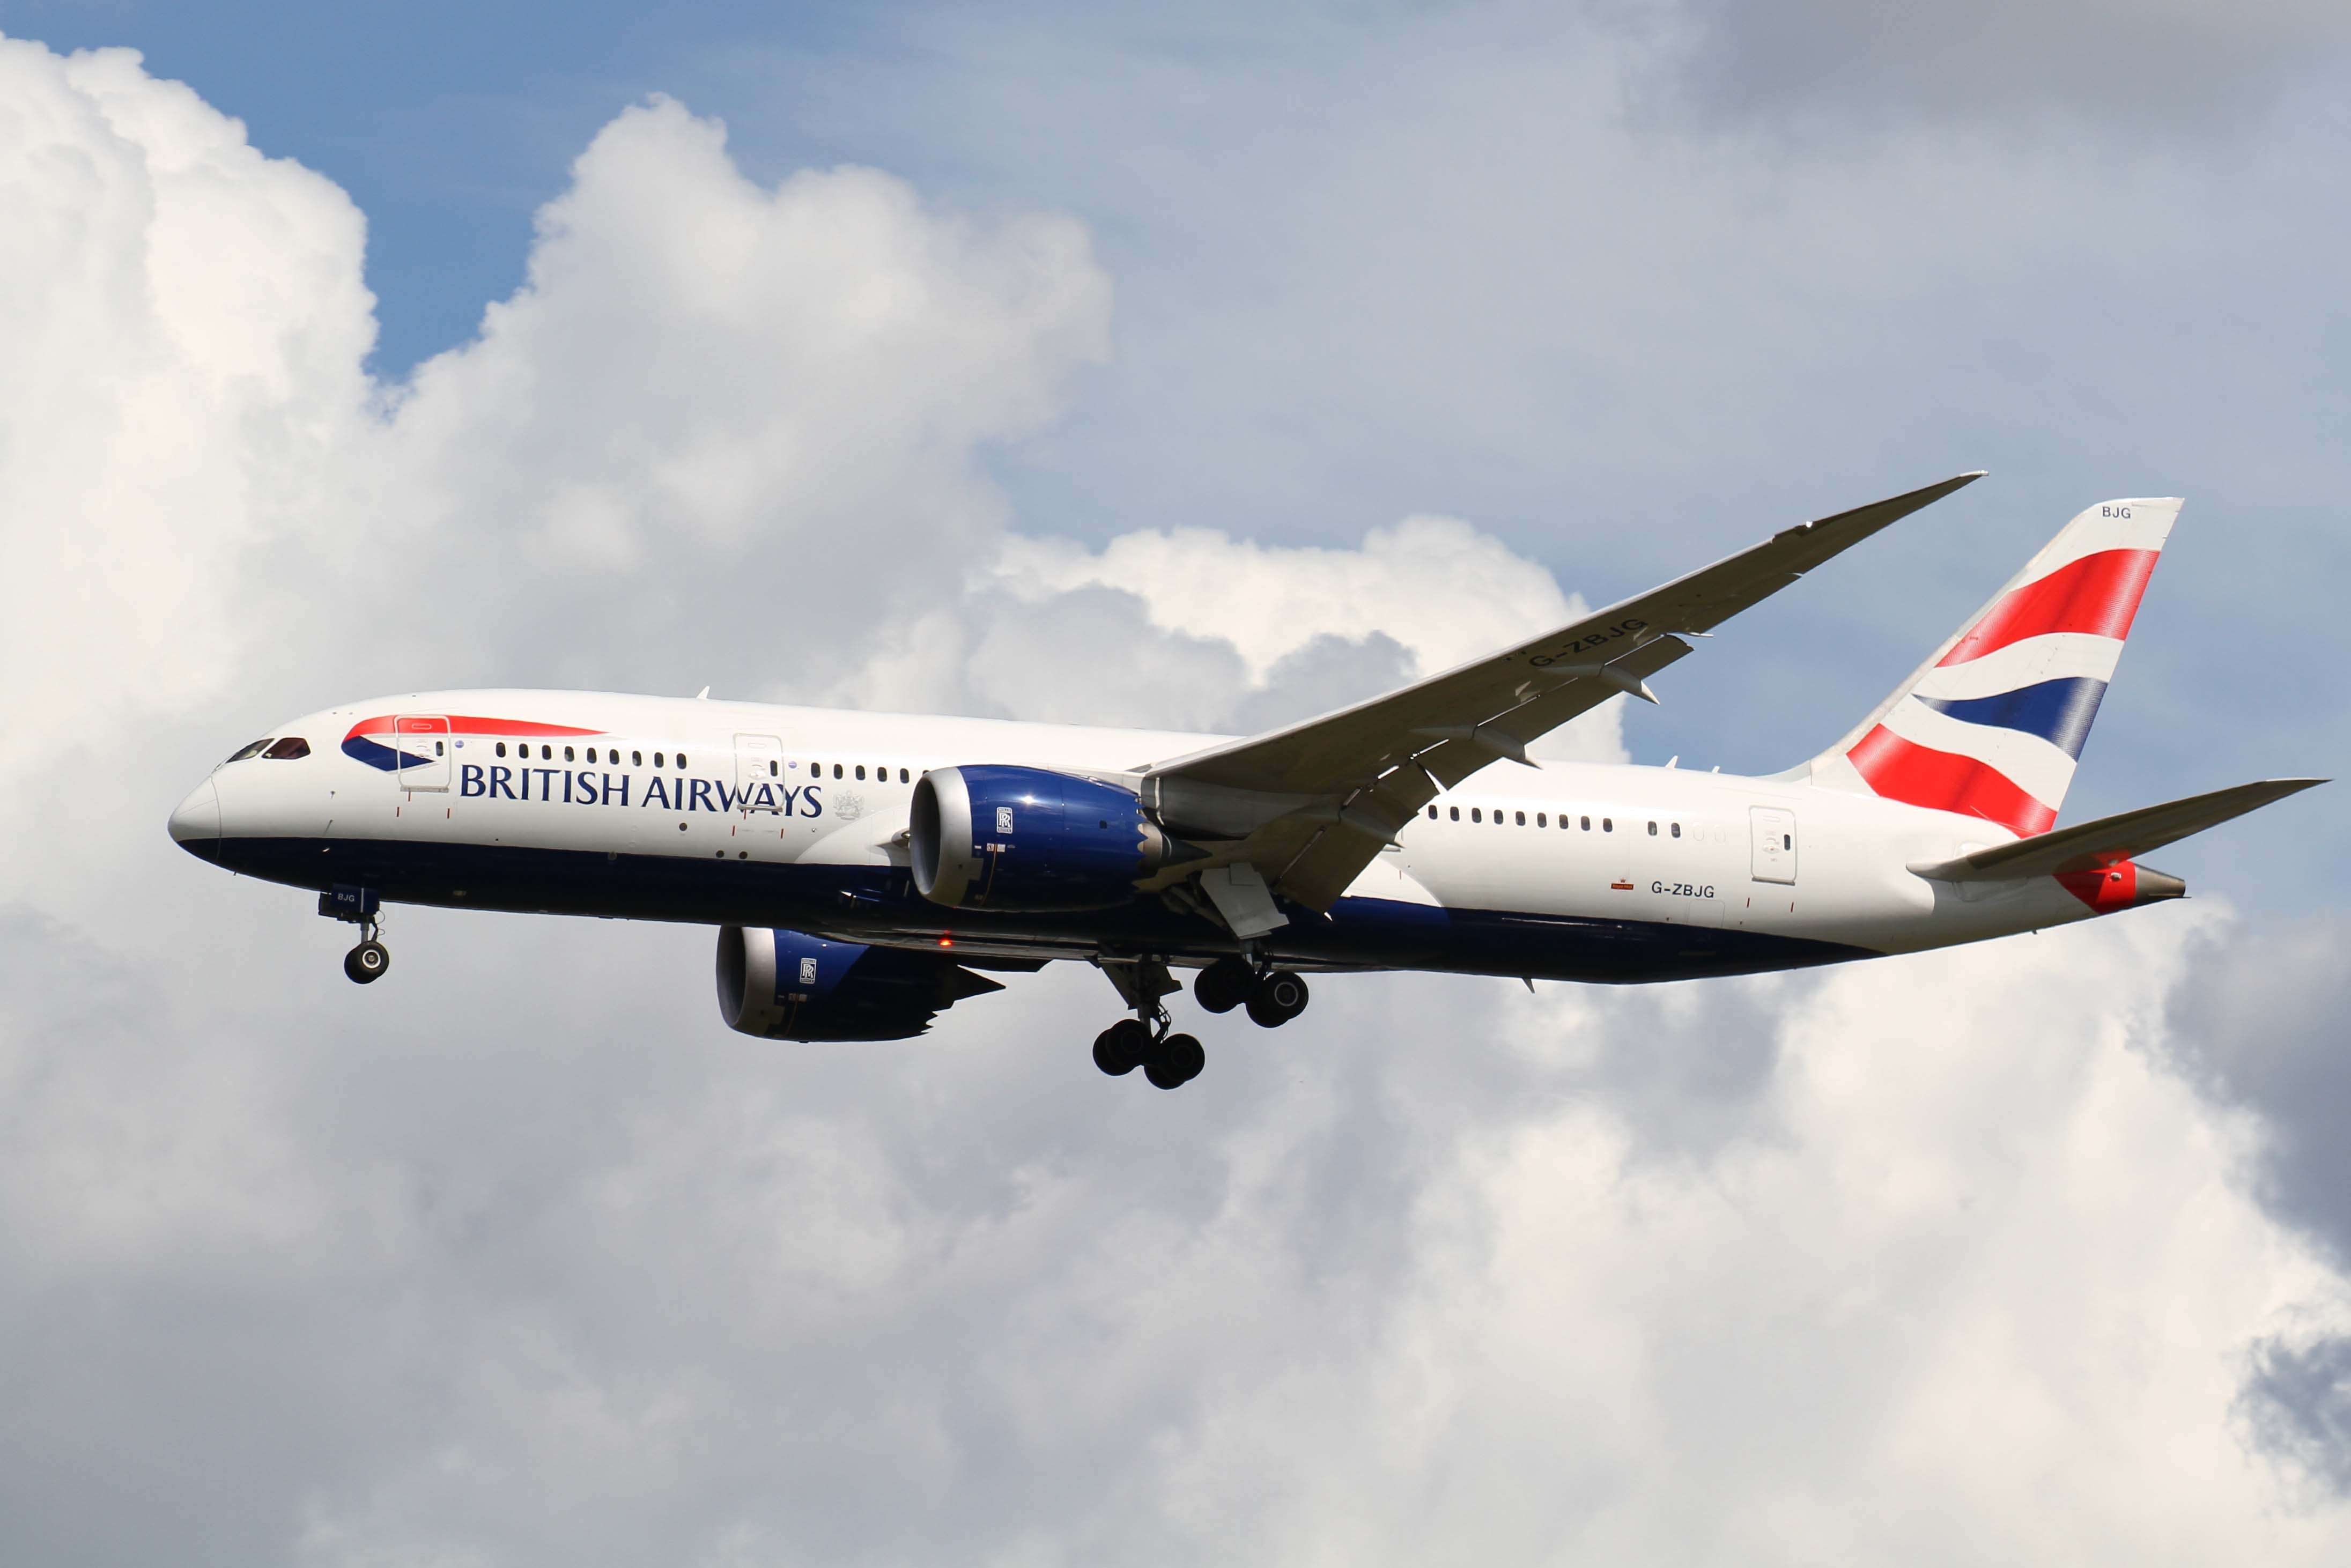 A British Airways Boeing 787 landing at Heathrow